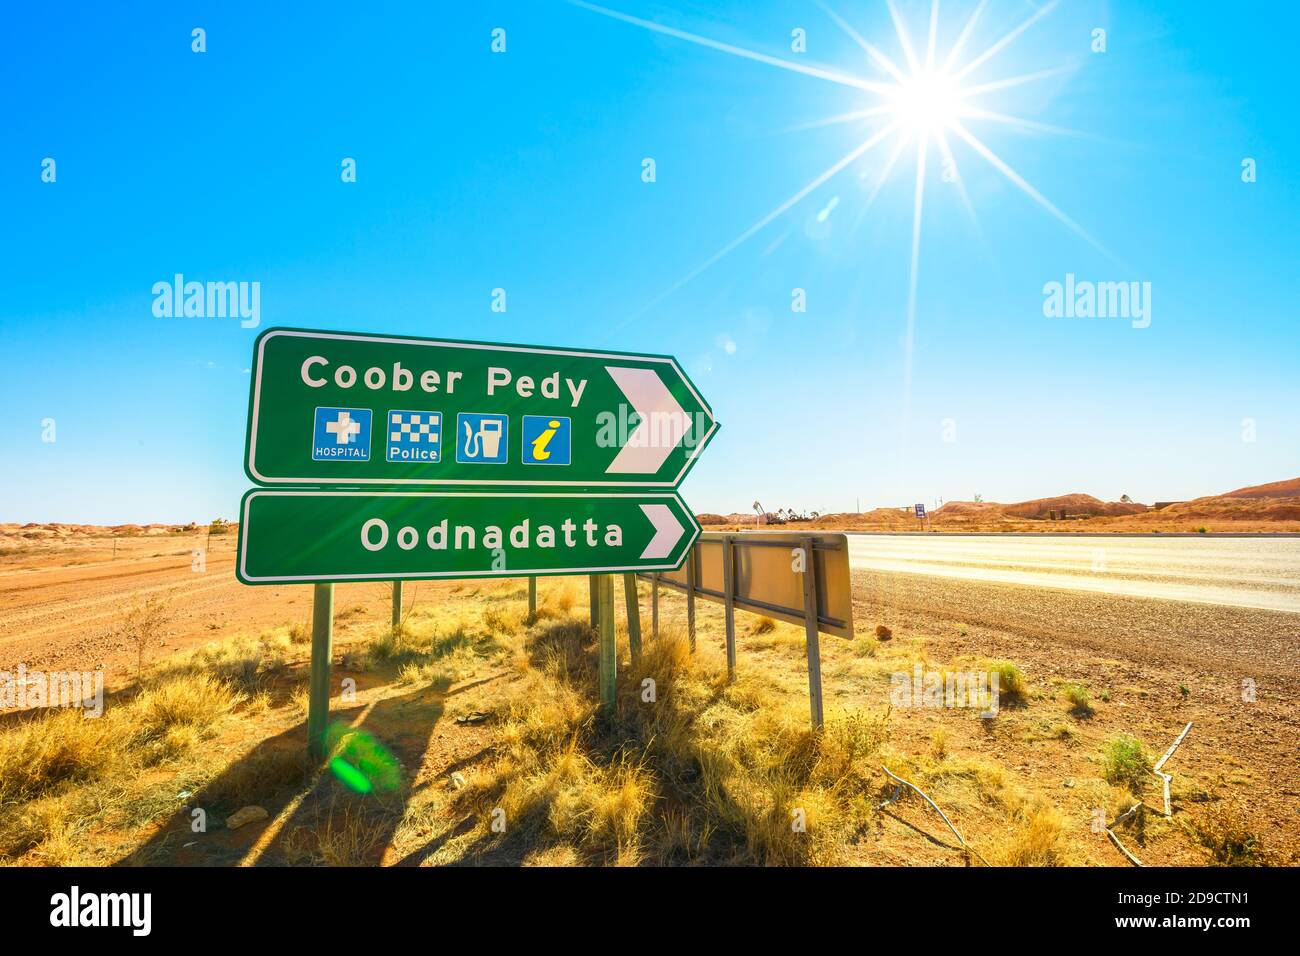 Anfahrt Straßenschild für Coober Pedy Bergbaustadt in Australien. Opal-Bergbaustadt in der südaustralischen Outback-Wüste. Stockfoto